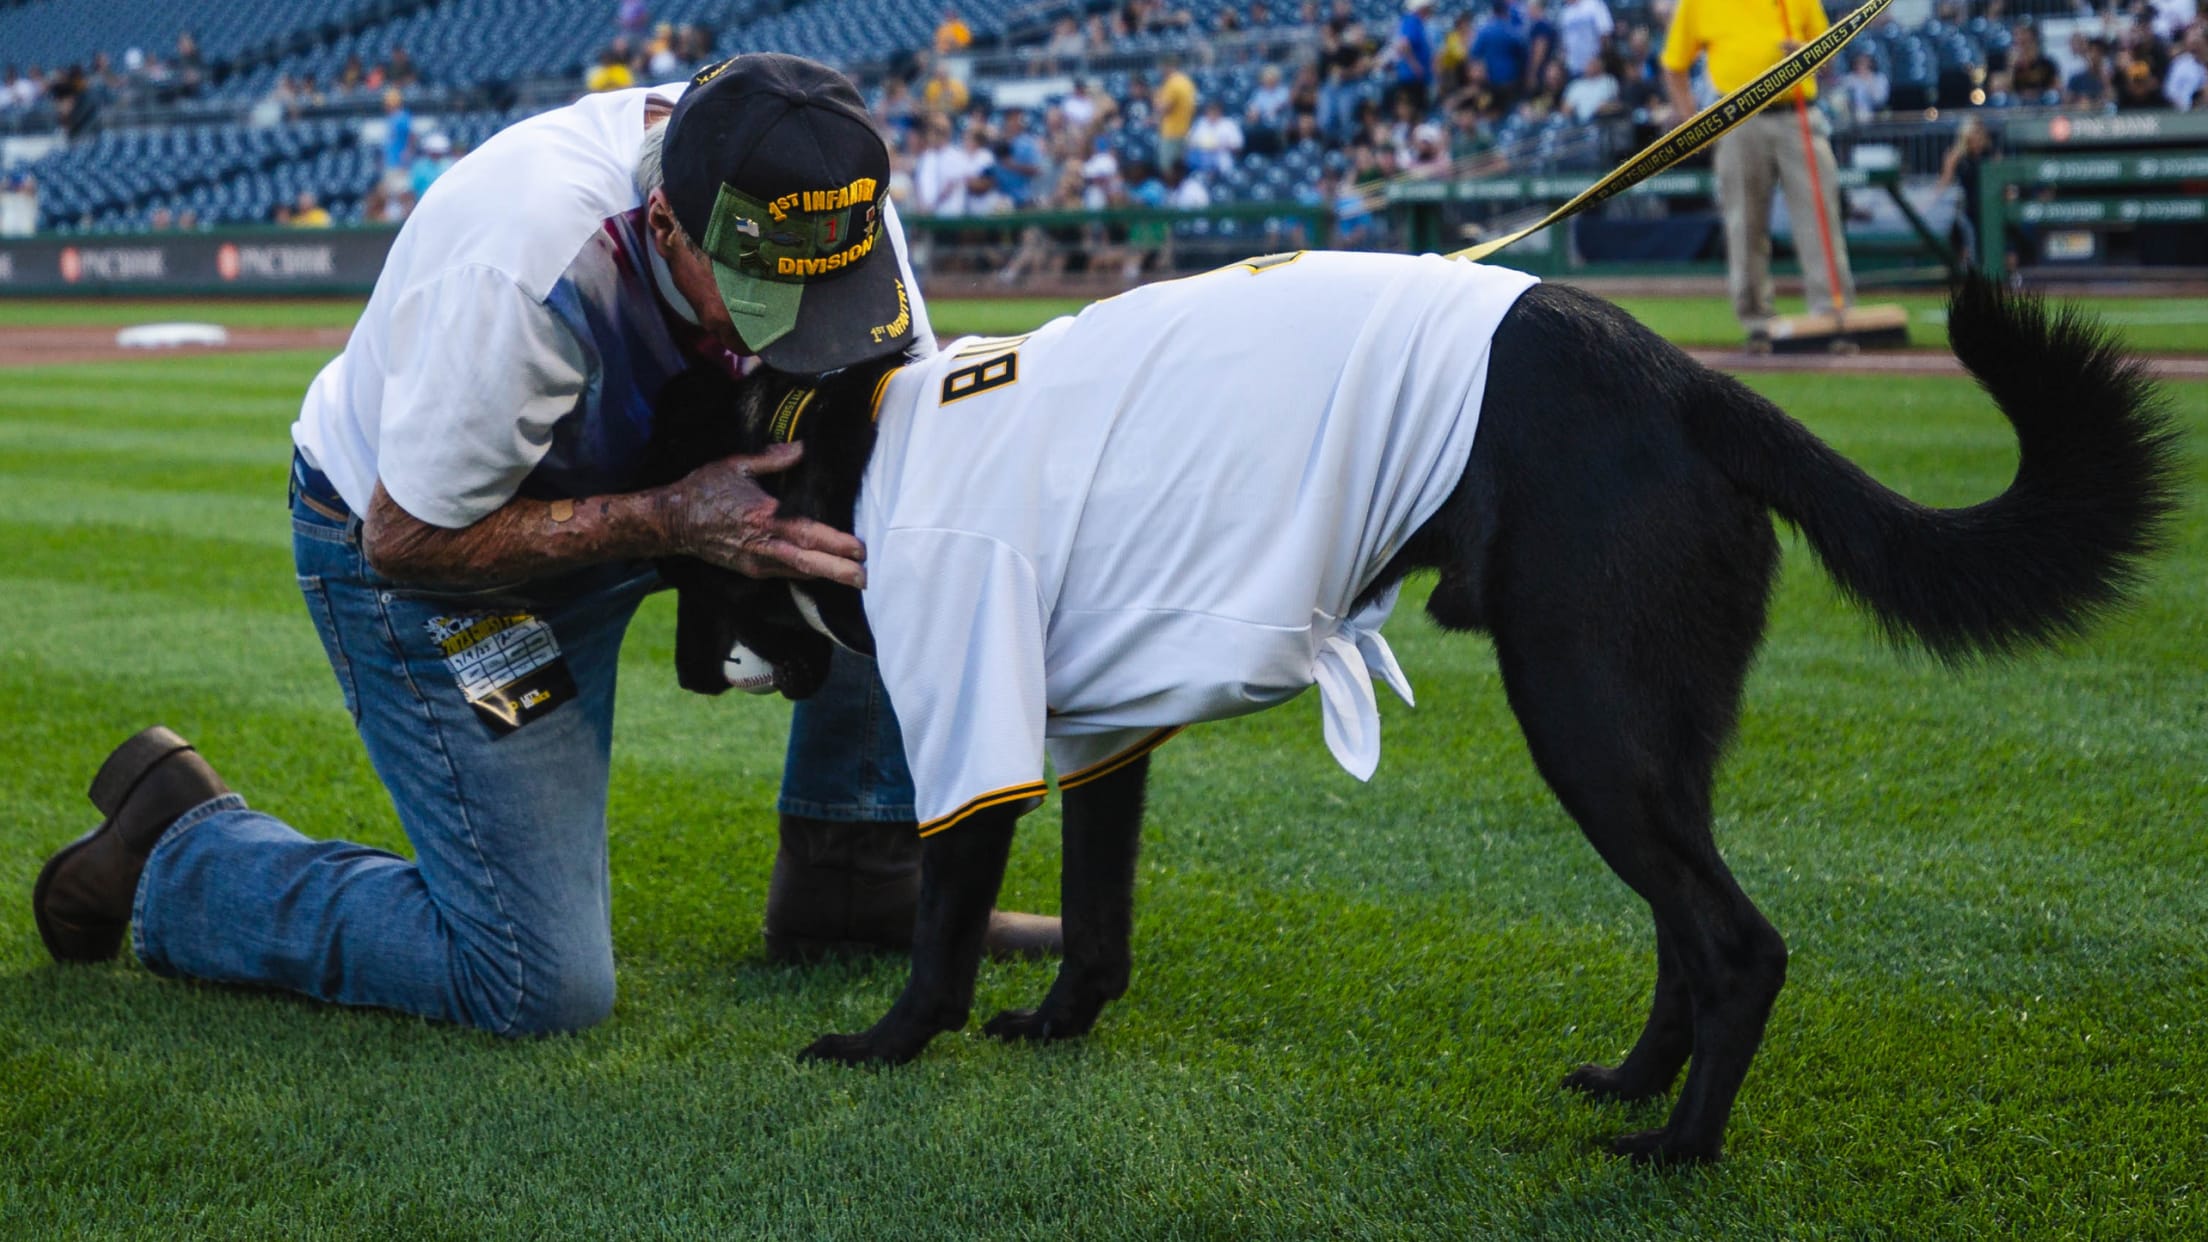 MLB Medium Pittsburgh Pirates Dog T-Shirt